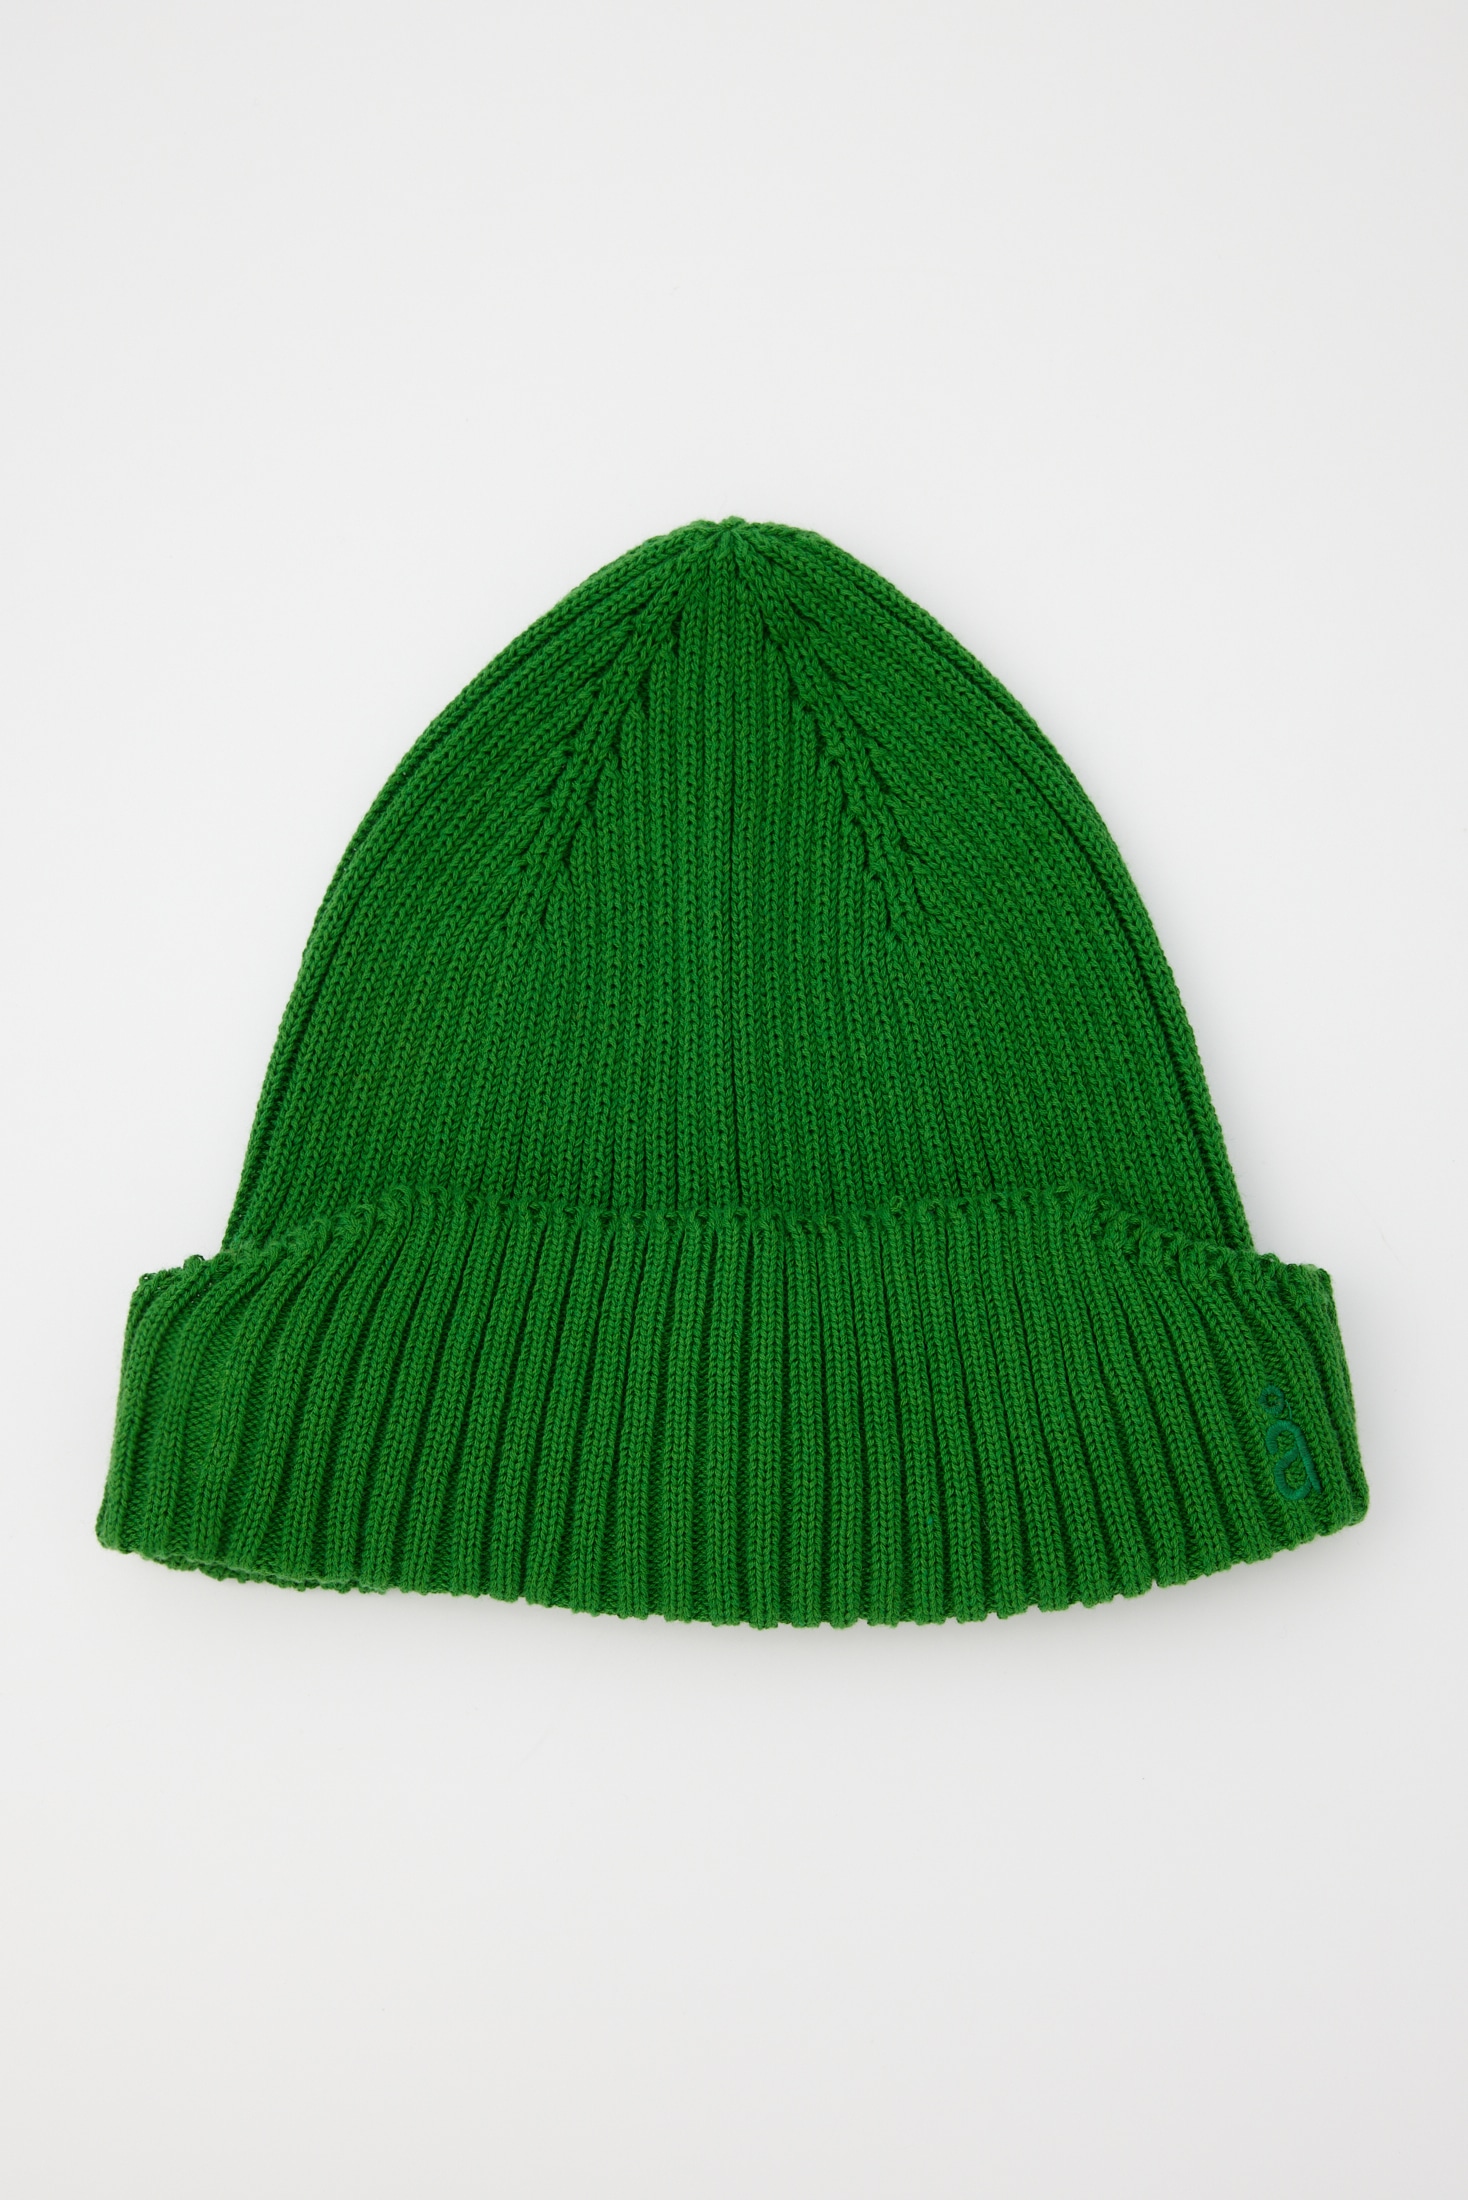 knit cap